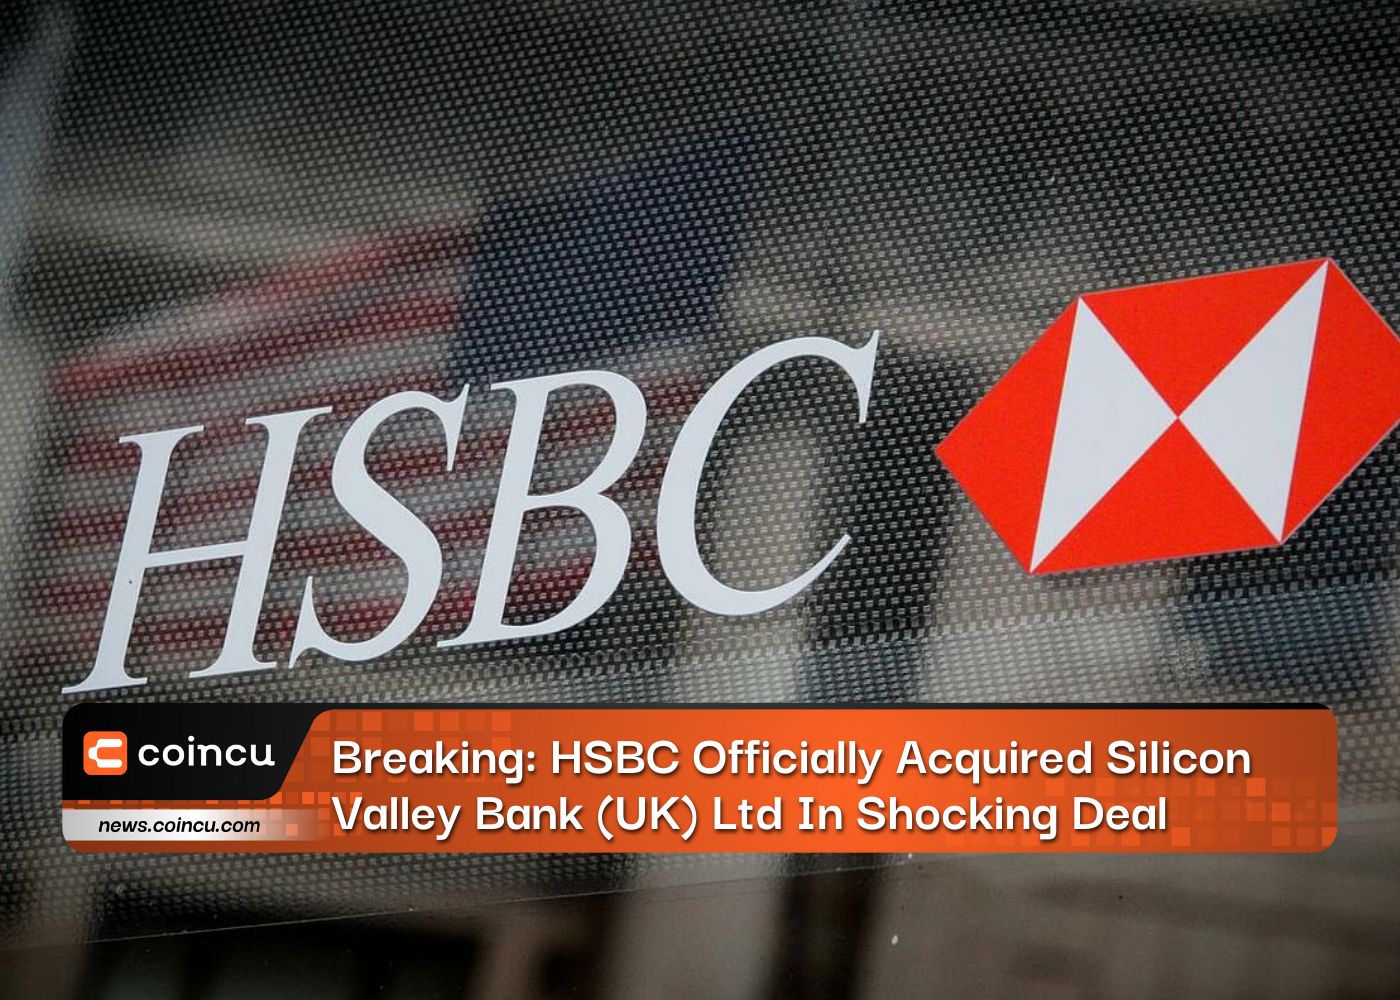 Son Dakika: HSBC, Şok Bir Anlaşmayla Silicon Valley Bank (UK) Ltd'yi Resmen Satın Aldı